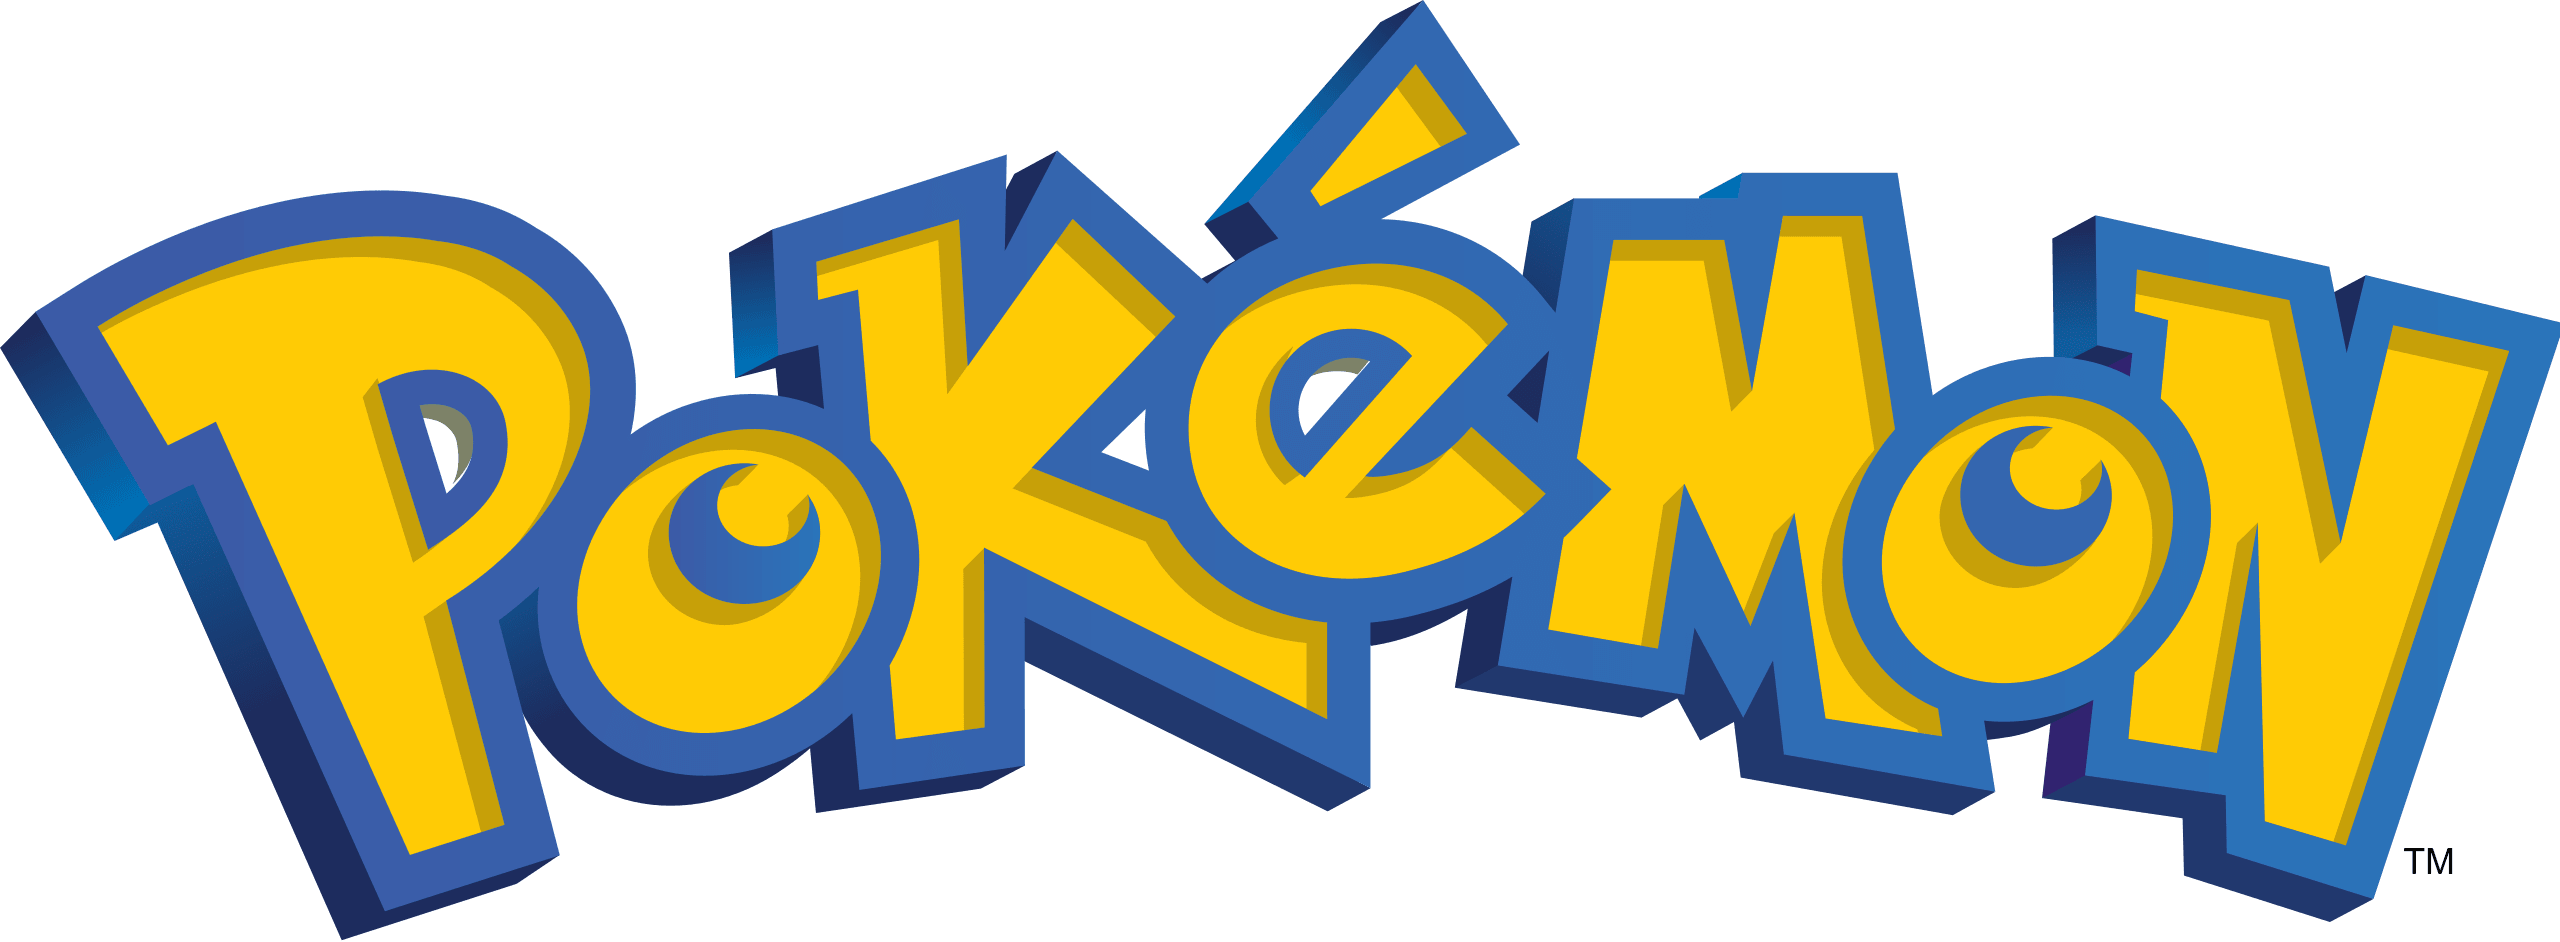 Pop! Games - Pokemon - Alakazam - #855 - Hobby Champion Inc